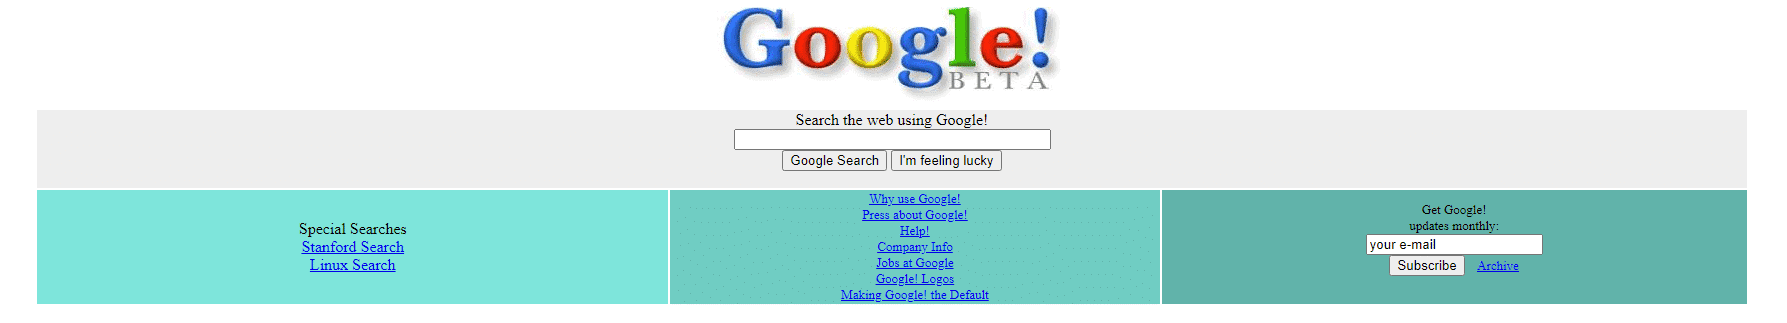 google.com 1999